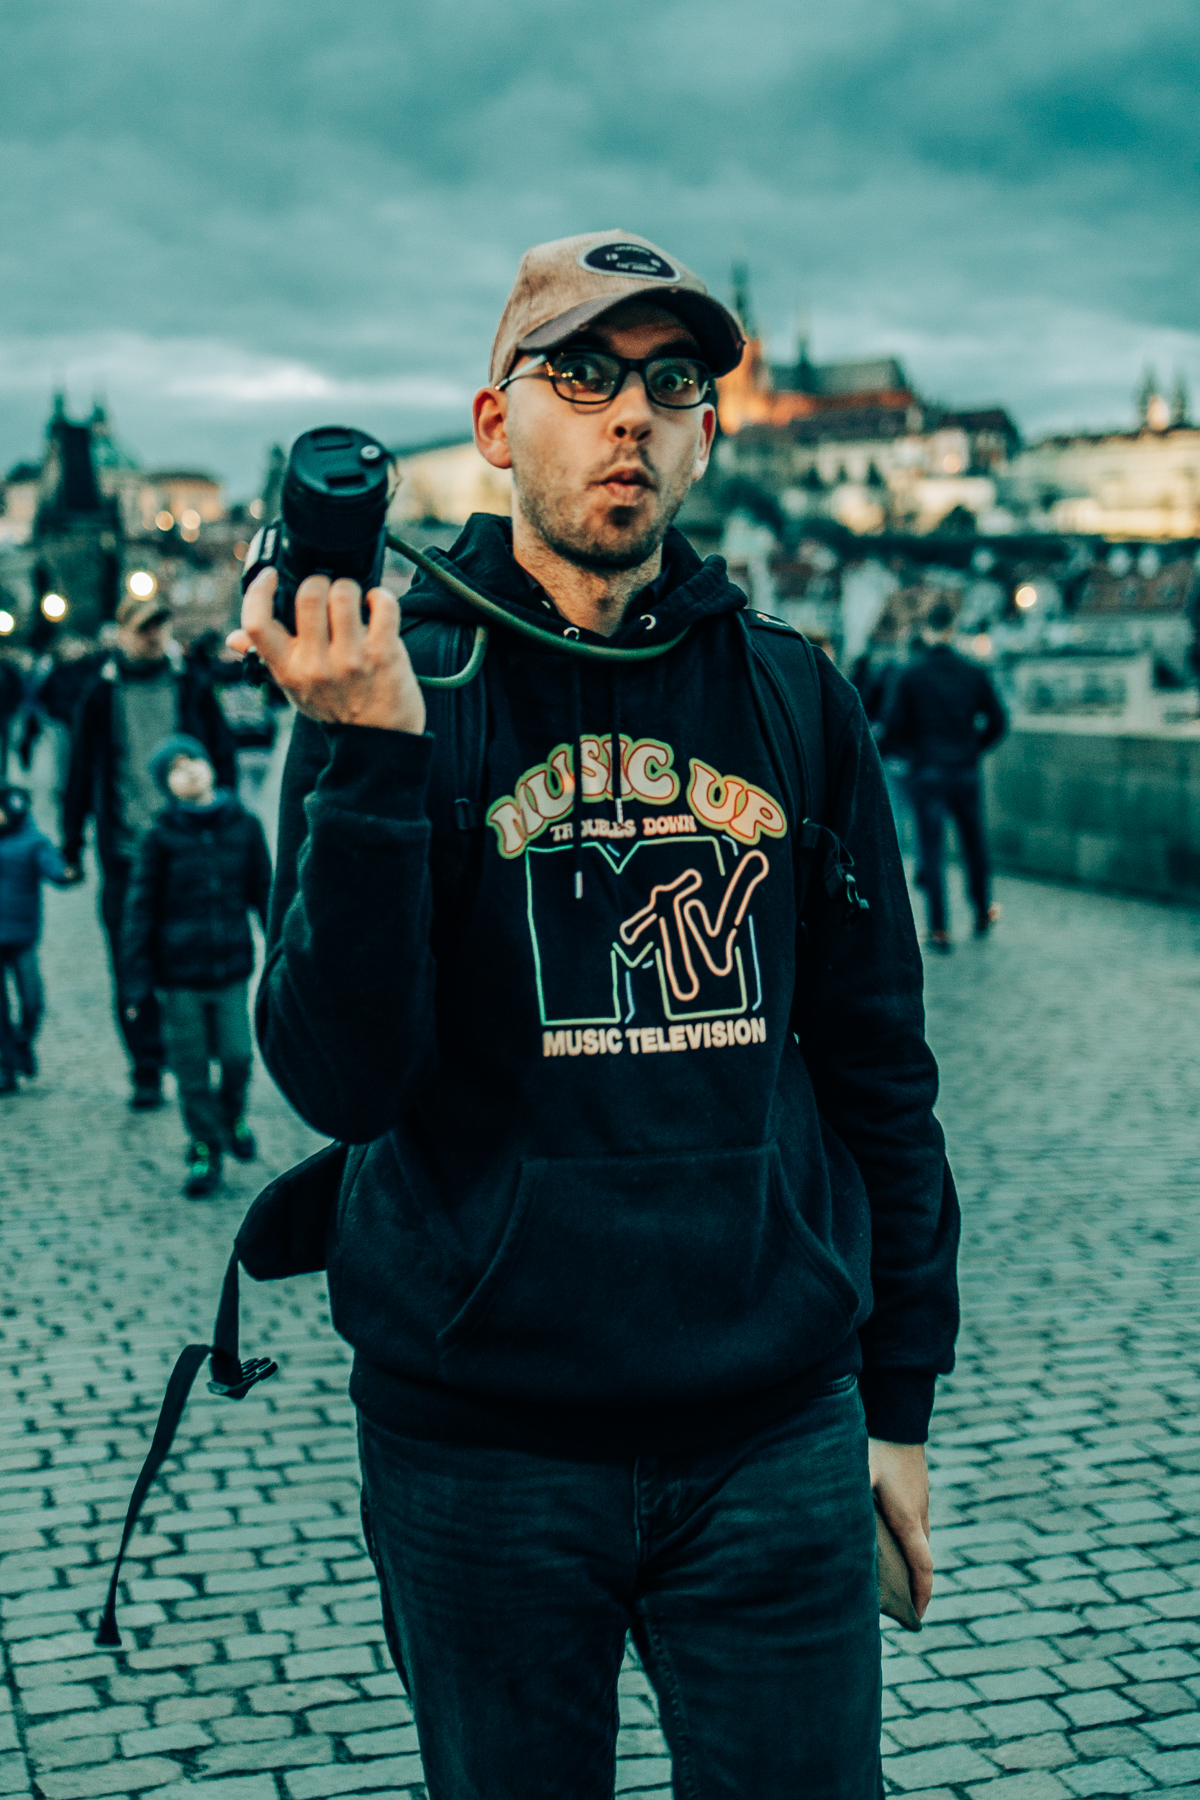 Lumix S5 35 50mm Festbrennweiten Prag 1 - Fotoausrüstung für die Reisefotografie: Meine Tipps für leichtes Gepäck